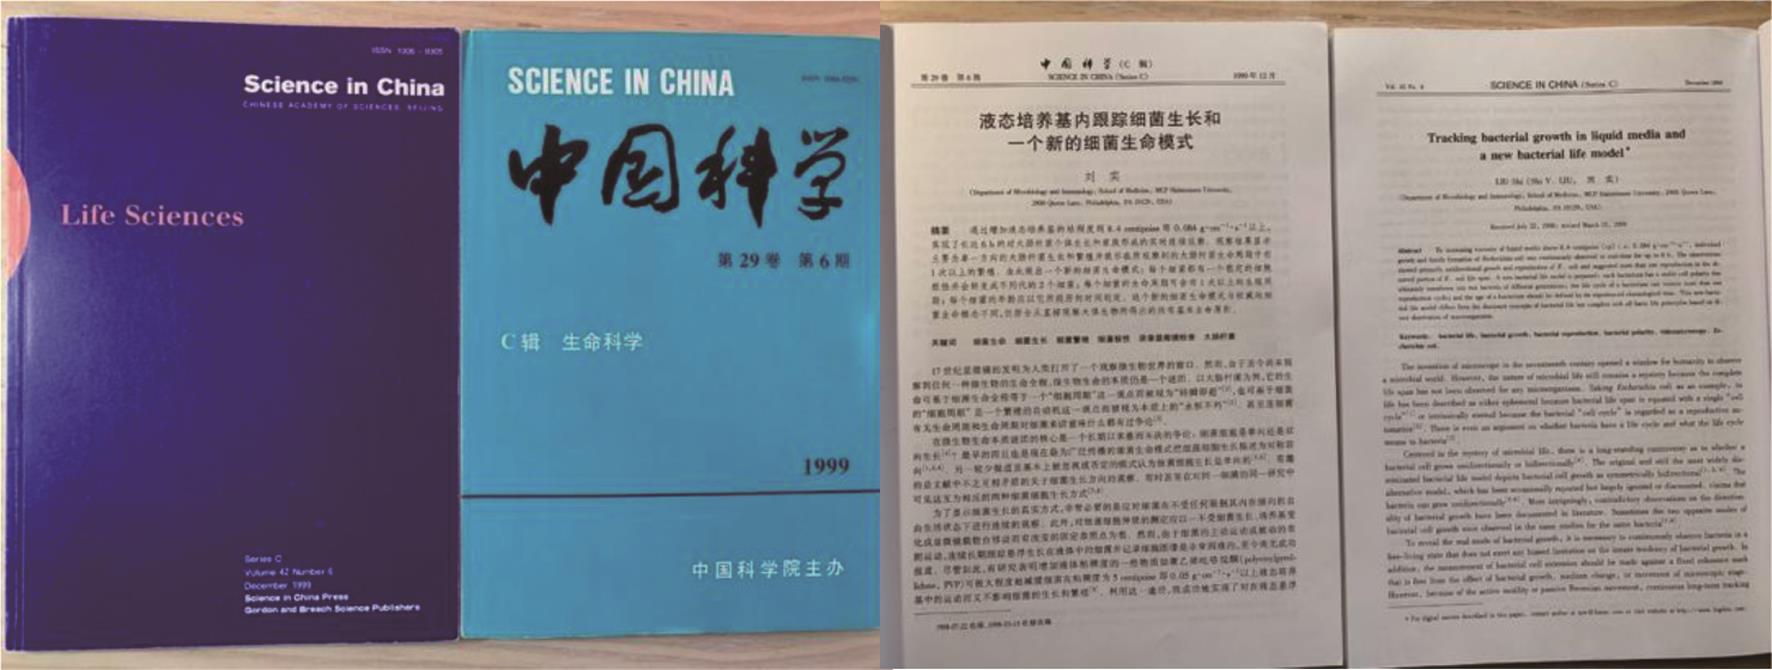 论文在《中国科学》(生命科学)中、英文版发表。